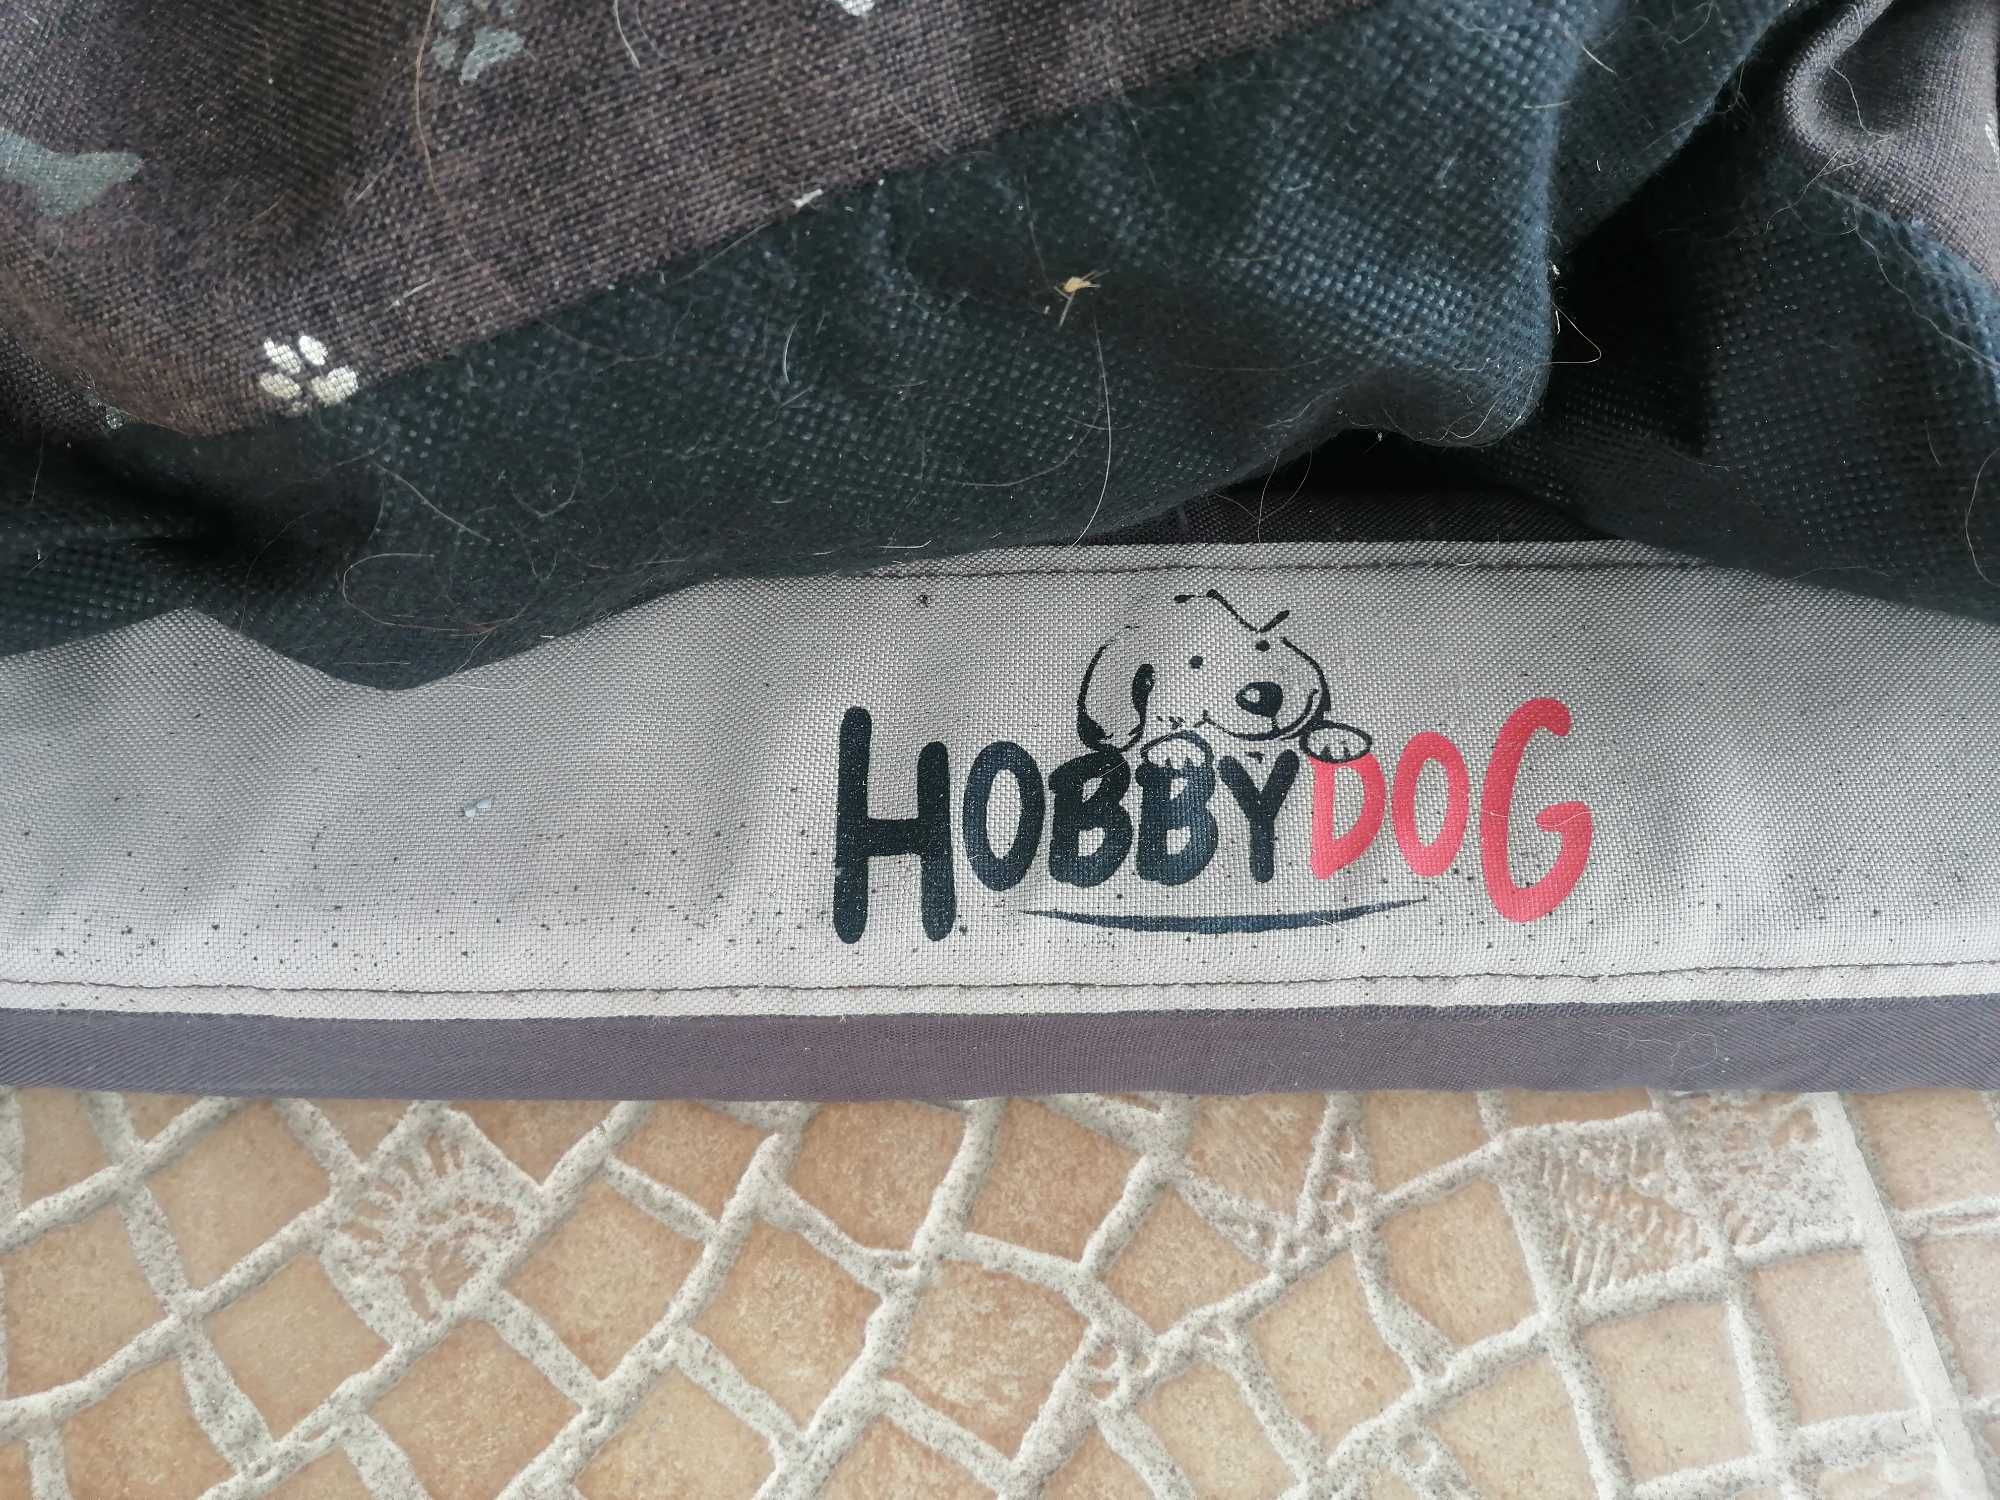 Duże legowisko dla psa  90x50cm Hobby Dog